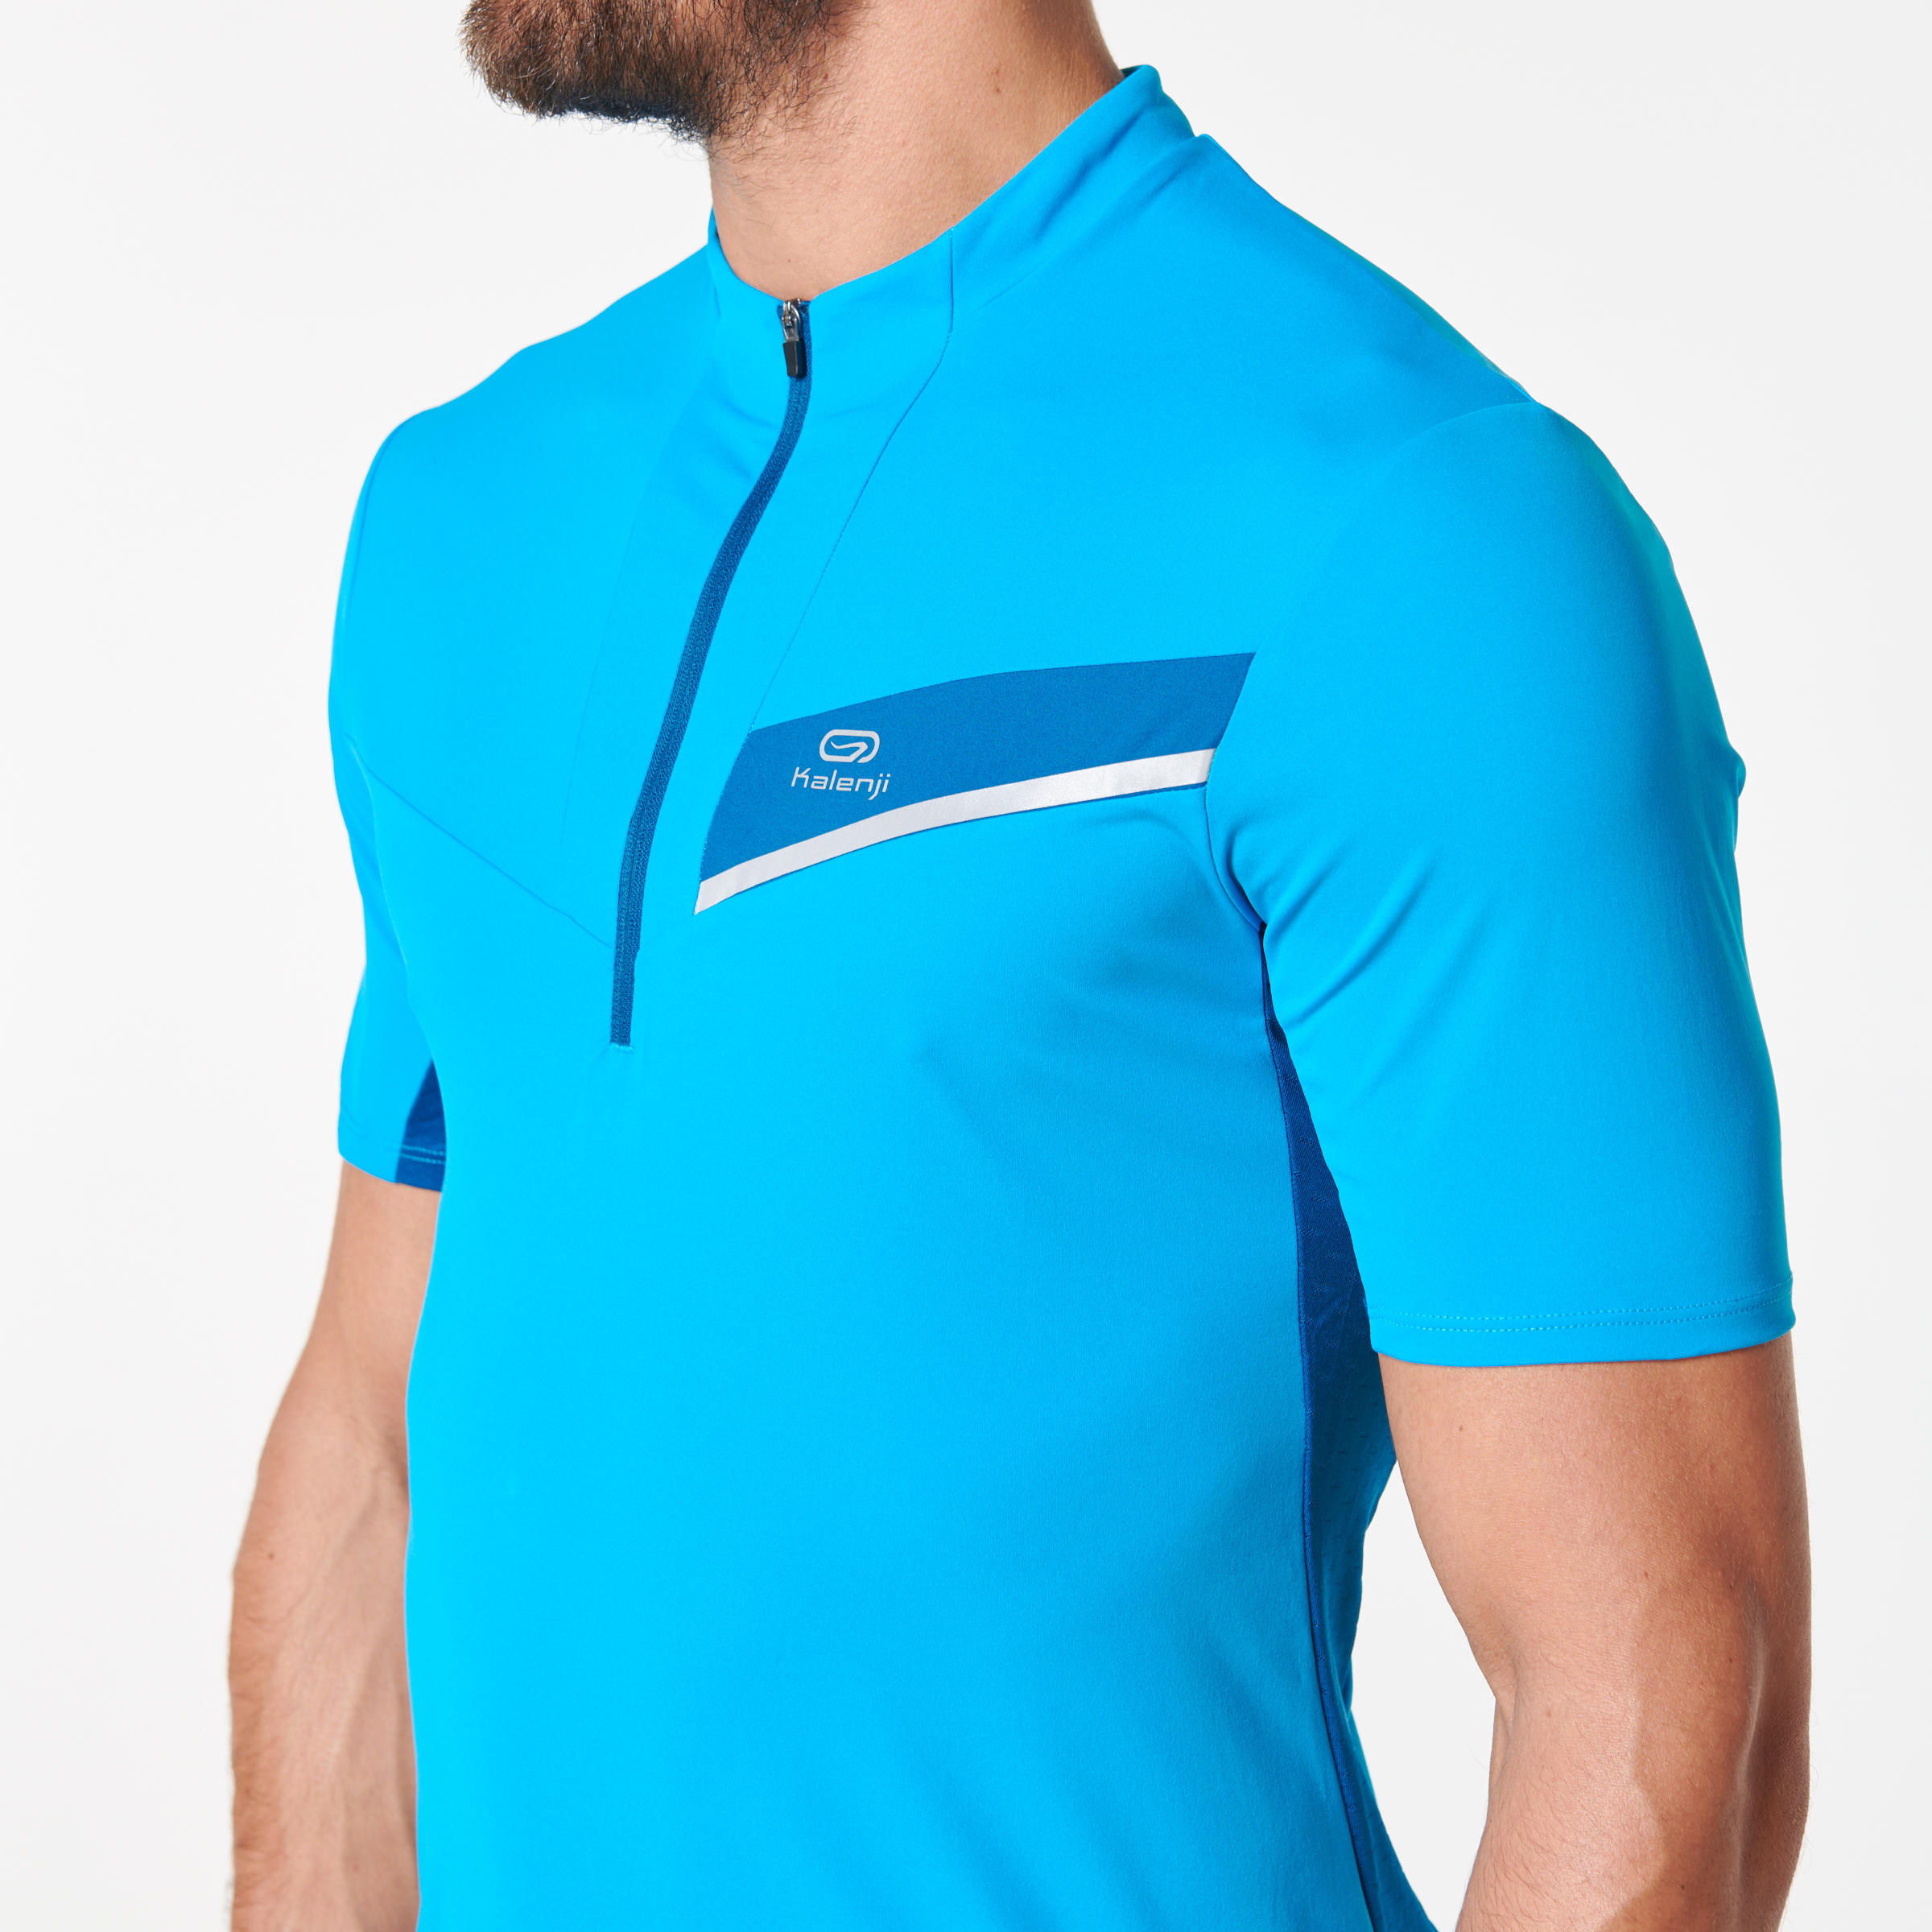 Men's Trail Running Short-Sleeved T-shirt - Blue/Turquoise 6/11